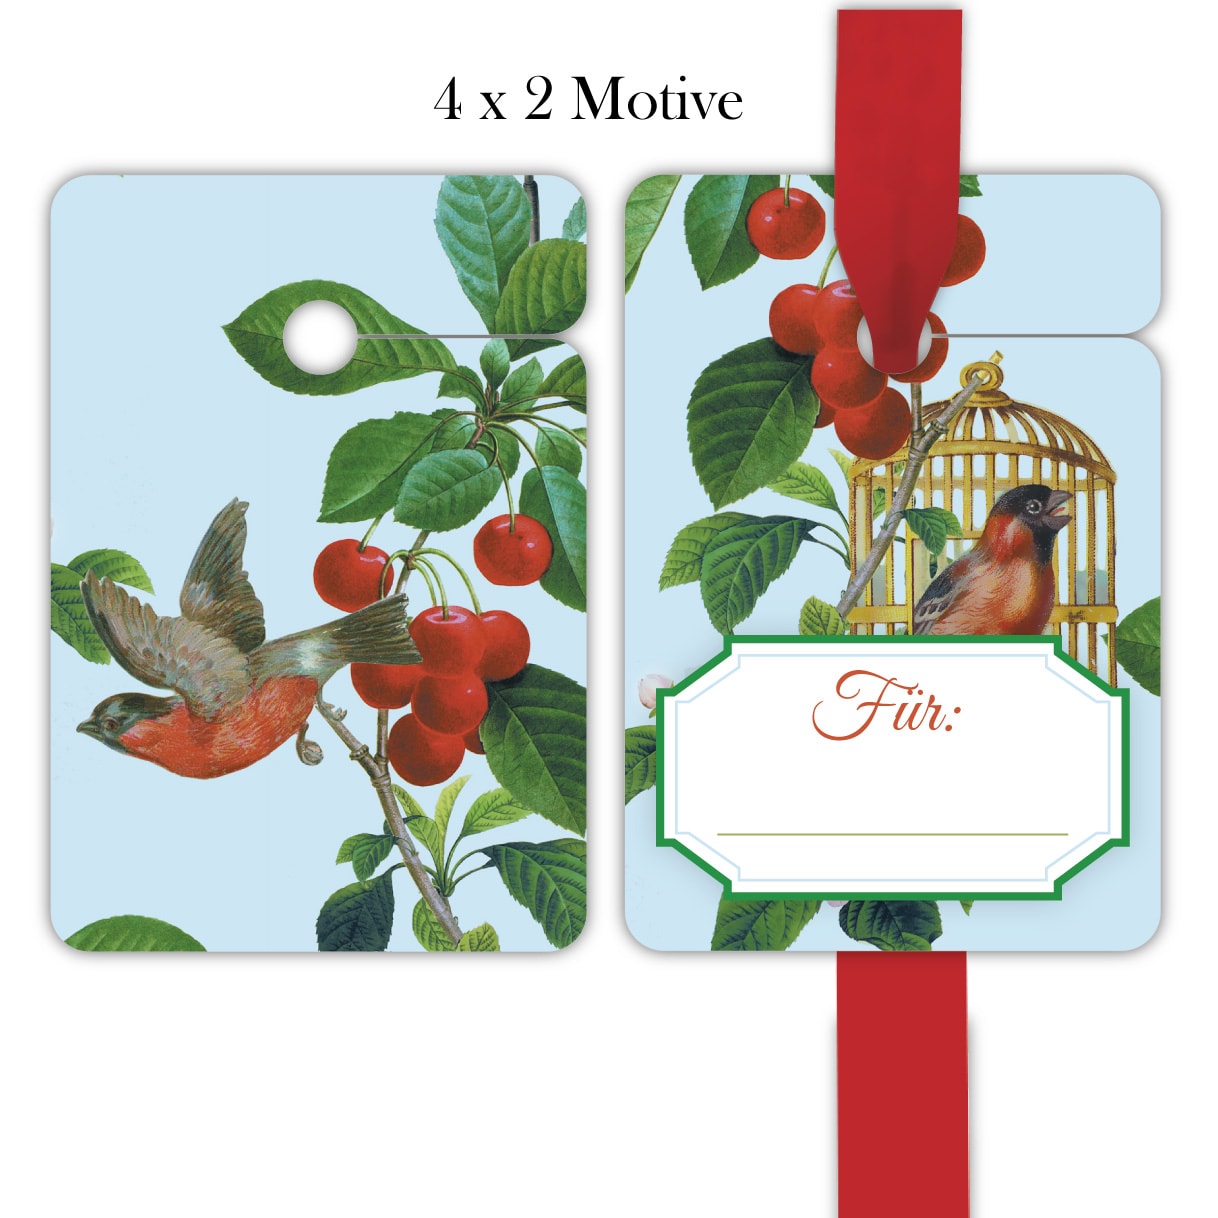 Kartenkaufrausch: Geschenkanhänger mit Vögelchen aus unserer Designer Papeterie in hellblau